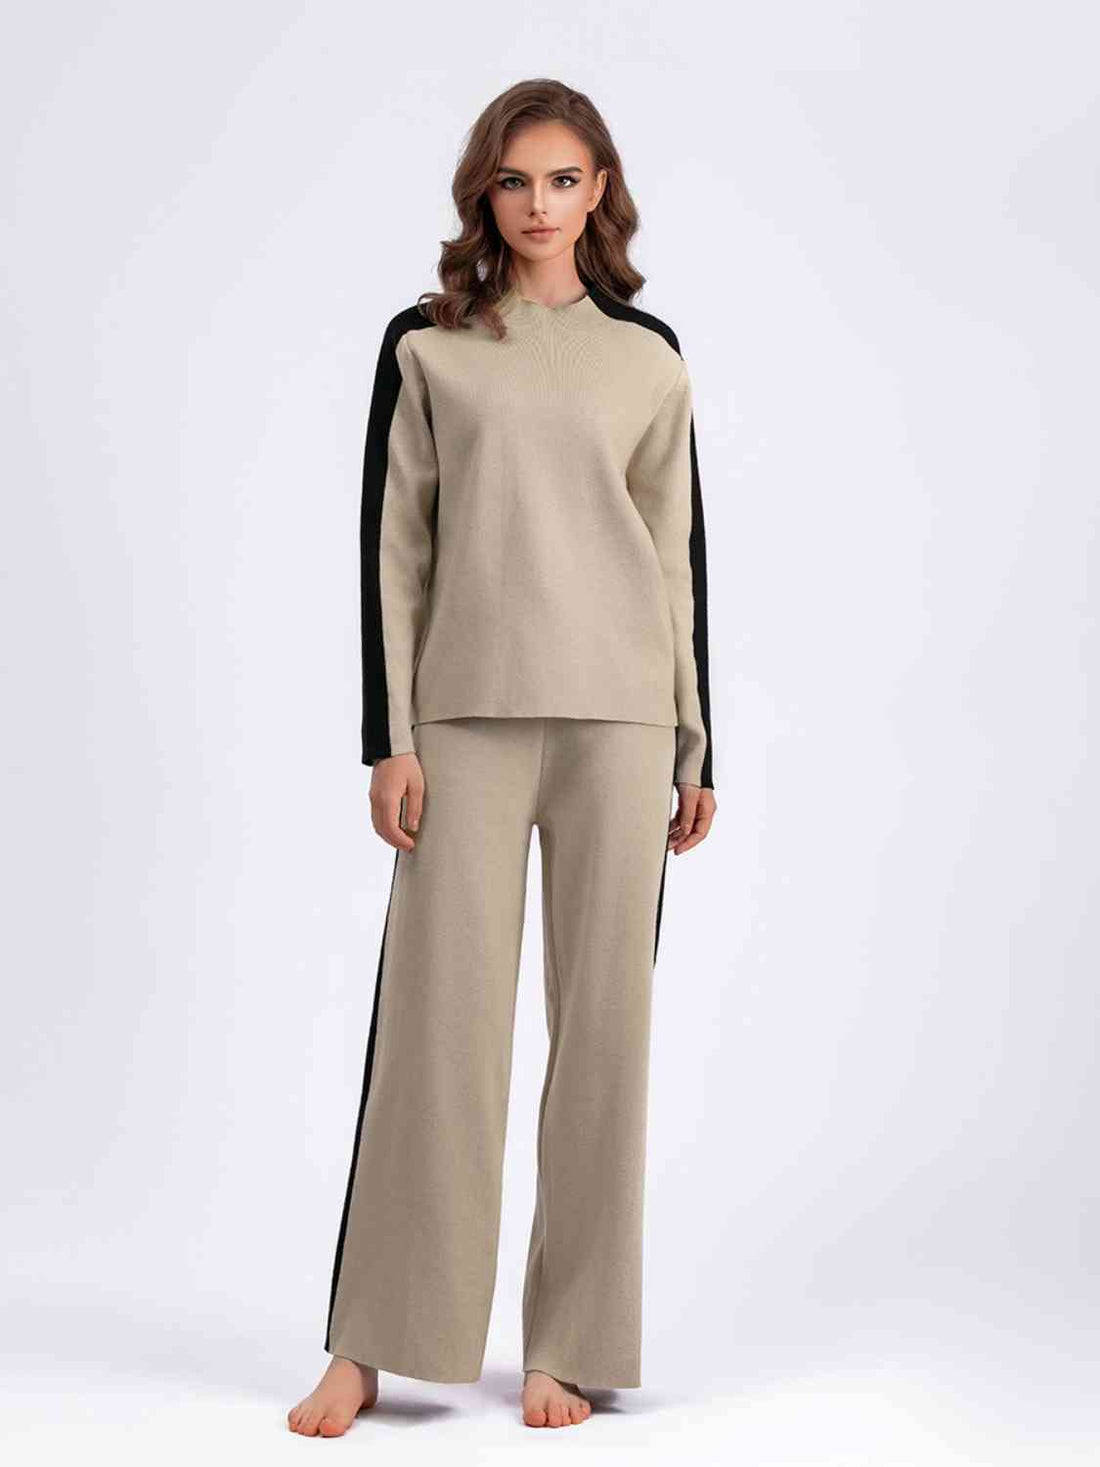 Contrast Sweater and Knit Pants Set - Pahabu - Women Fashion & Jewelry